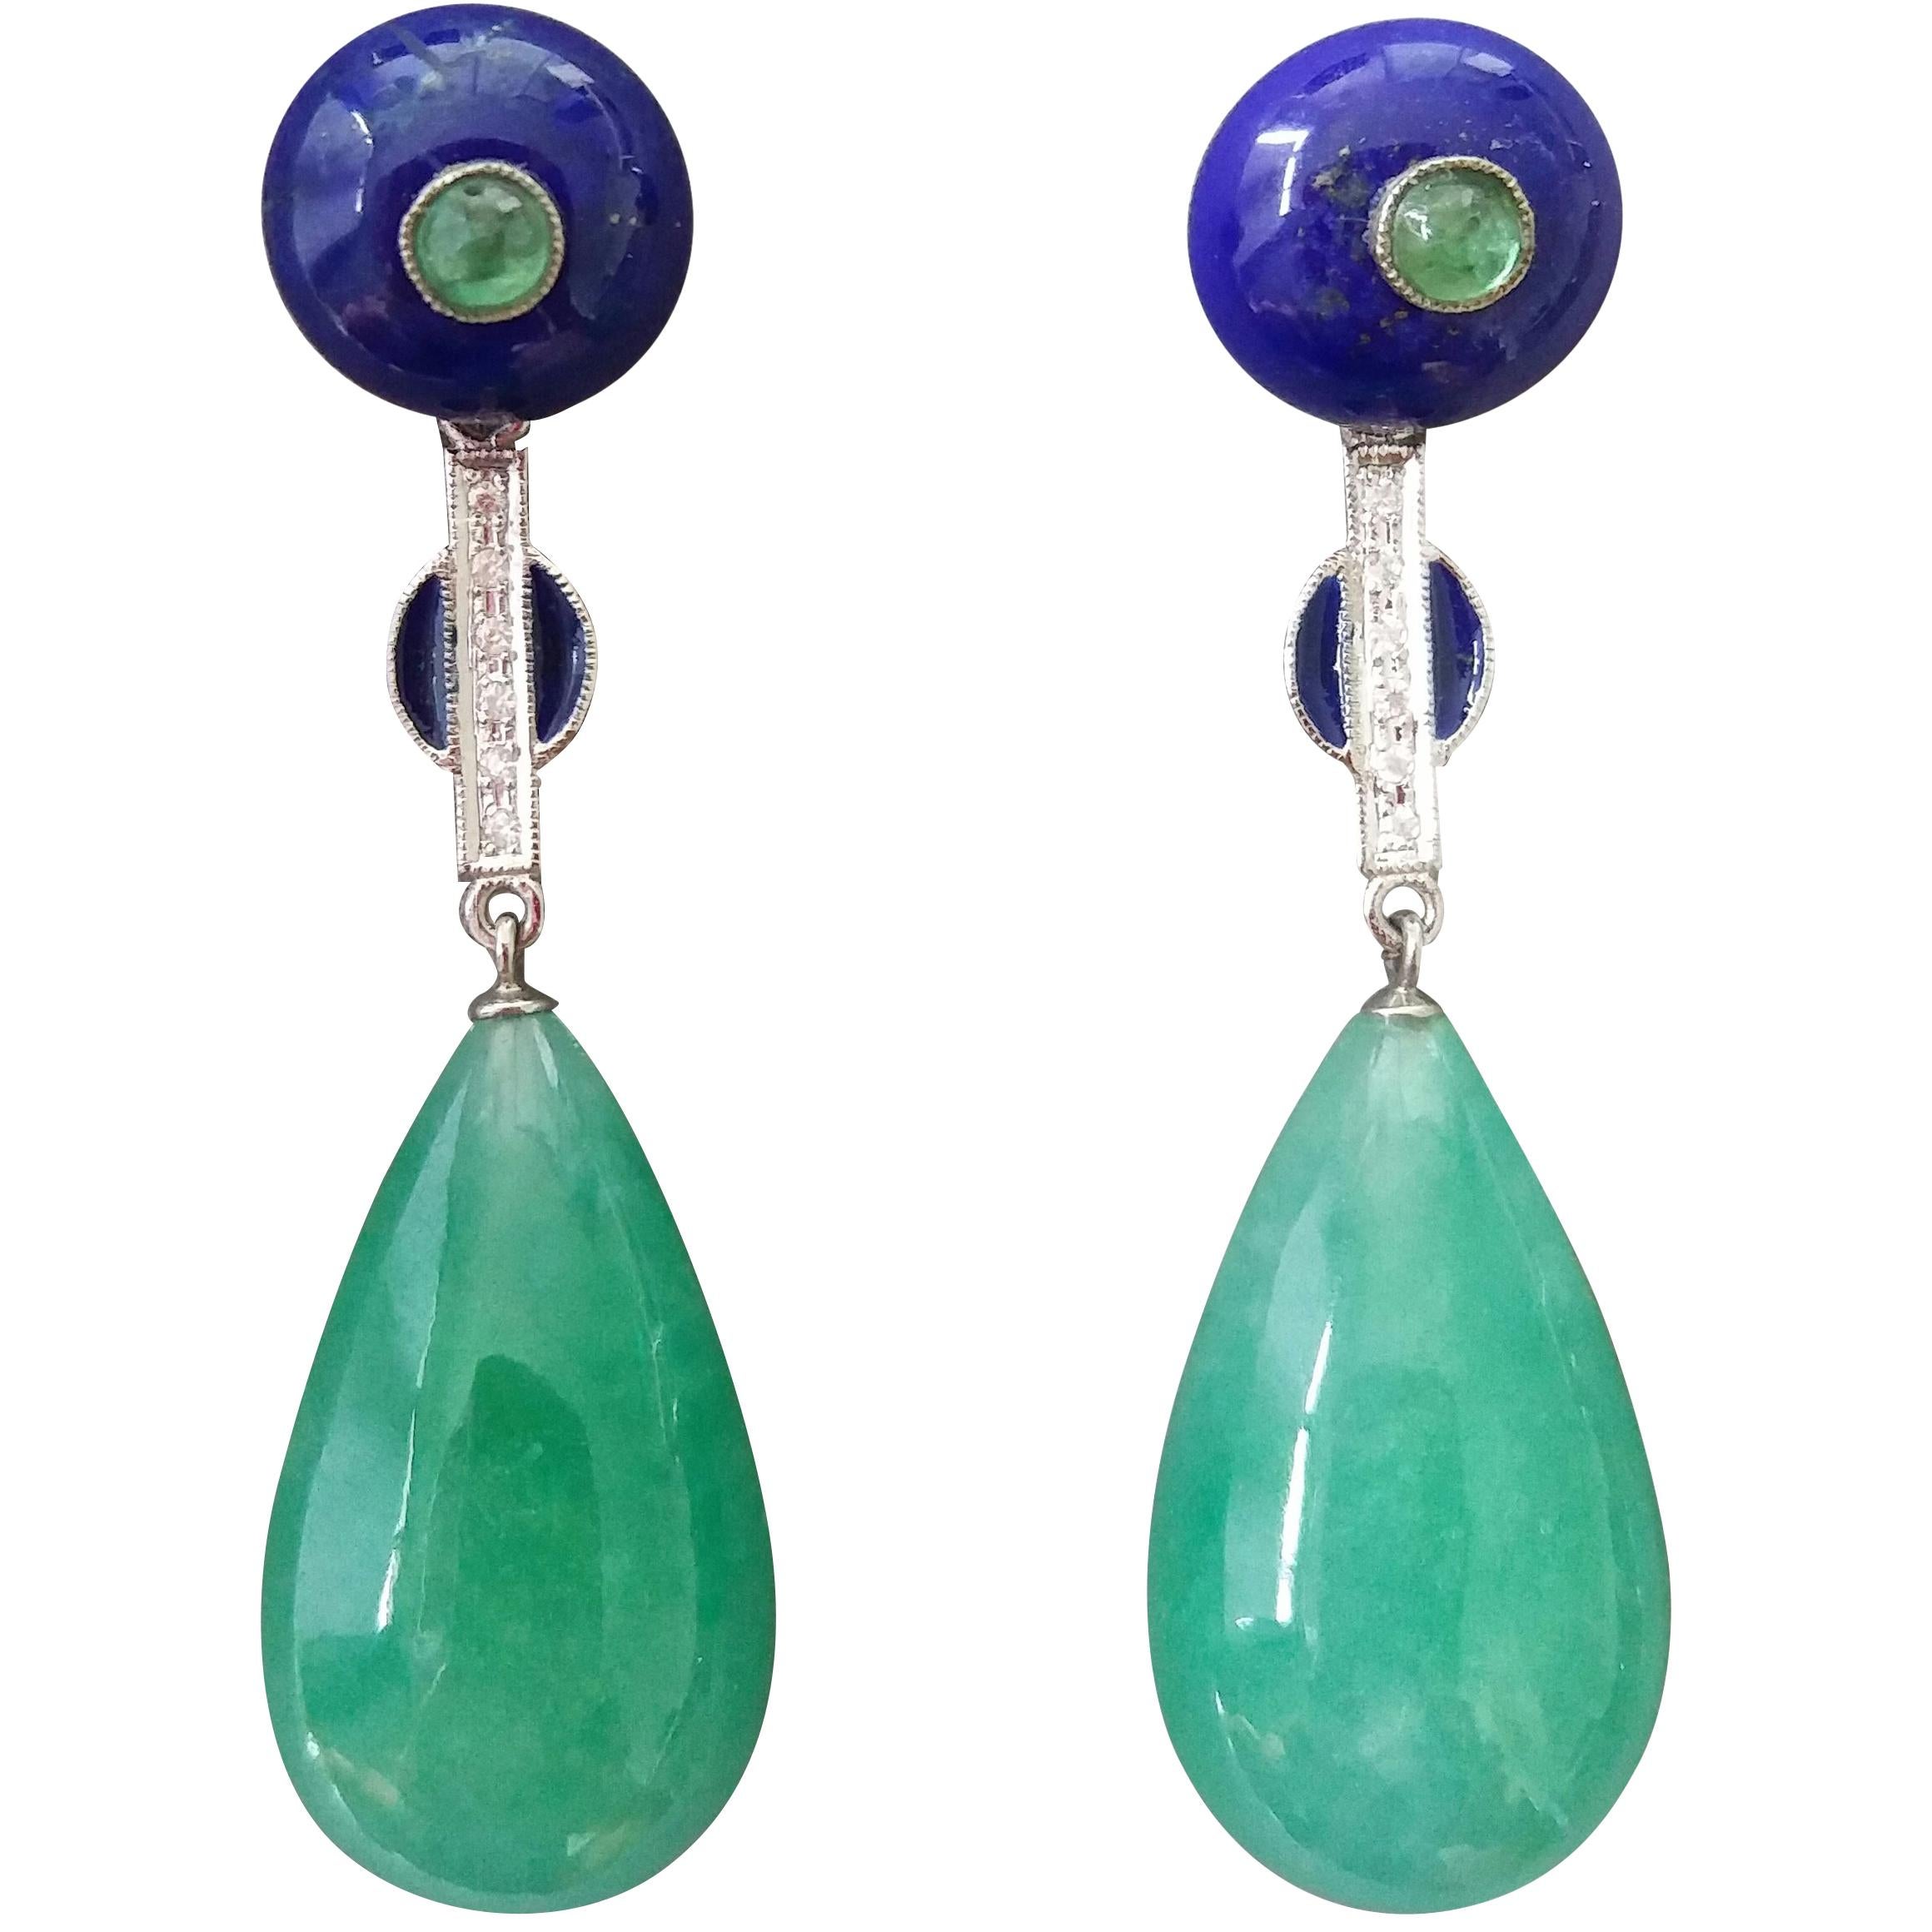 Ohrgehänge im Art-déco-Stil aus Jade mit Smaragd und Lapislazuli, blauer Emaille und Golddiamanten